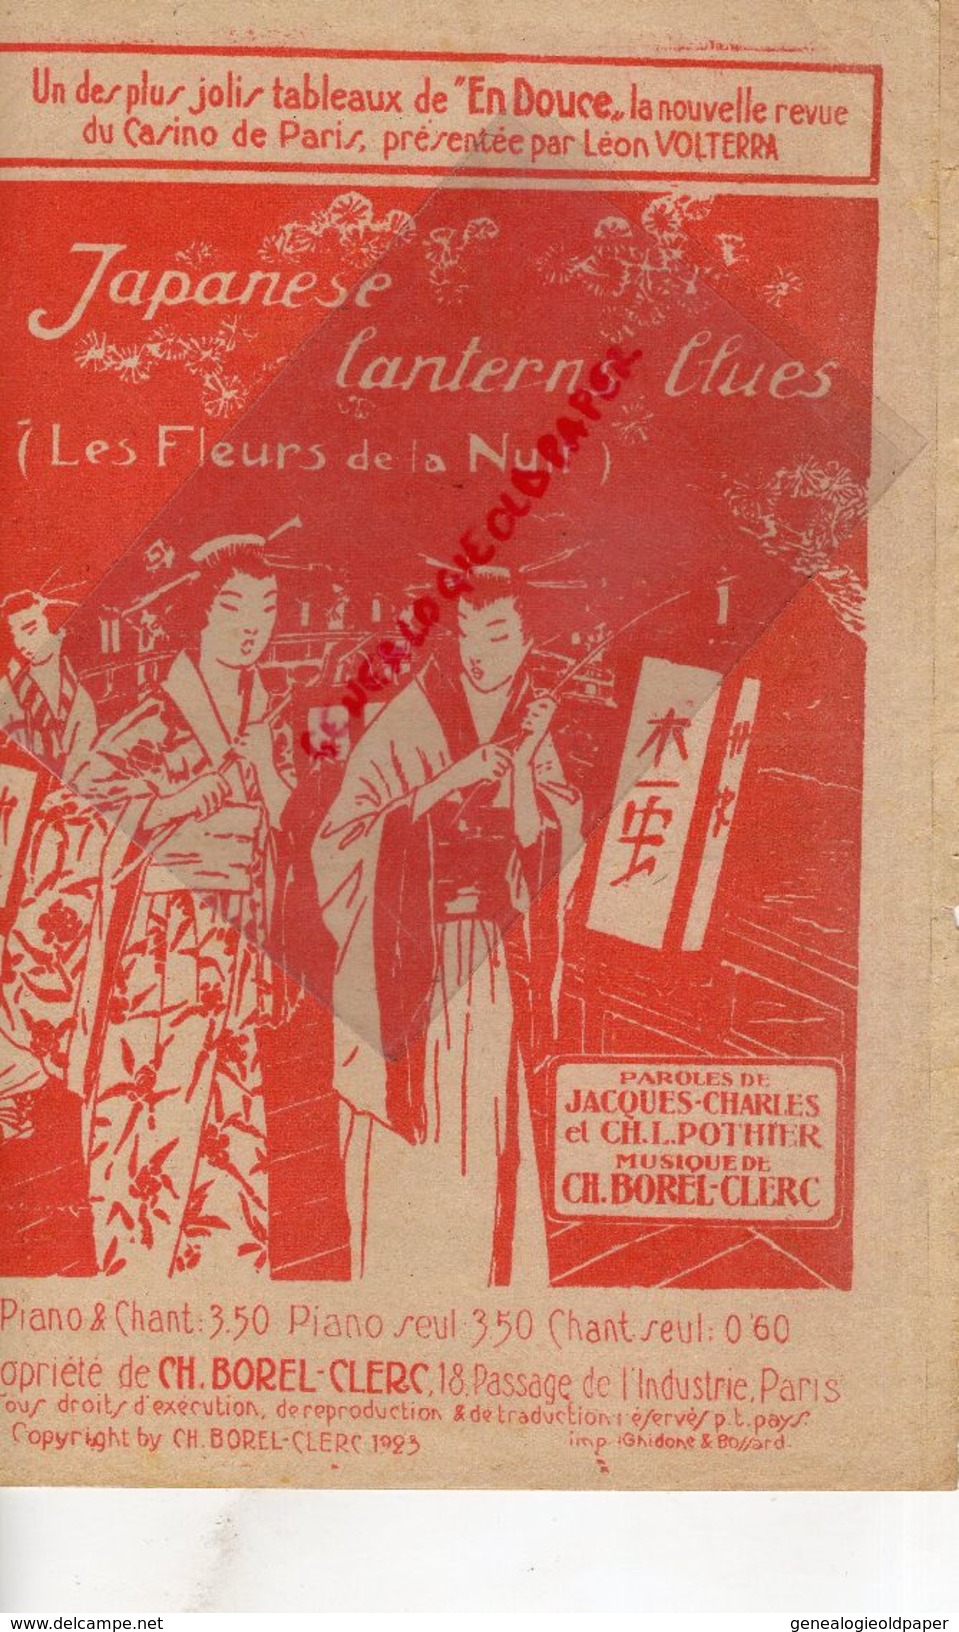 75-CASINO DE PARIS-LEON VOLTERRA-JAPANESE LANTERNES BLUES-FLEURS DE LA NUIT-JAPON-JACQUES CHARLES-POTHIER-CH. BOREL 1923 - Partituren